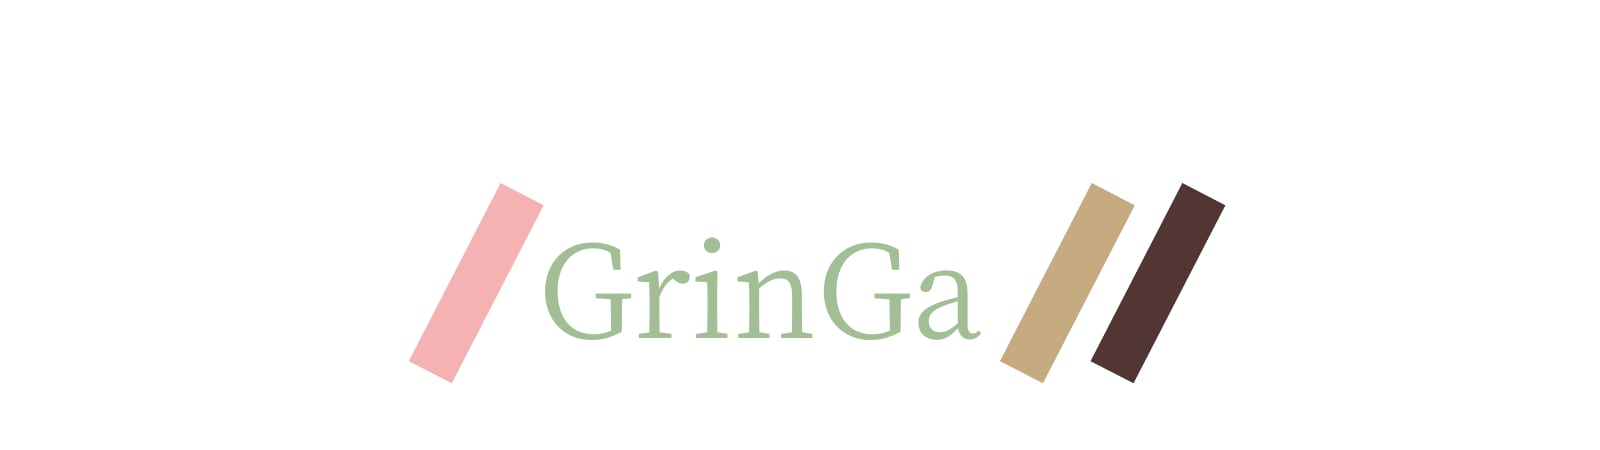 GrinGa | お菓子用 みどりいろの無添加パウダー